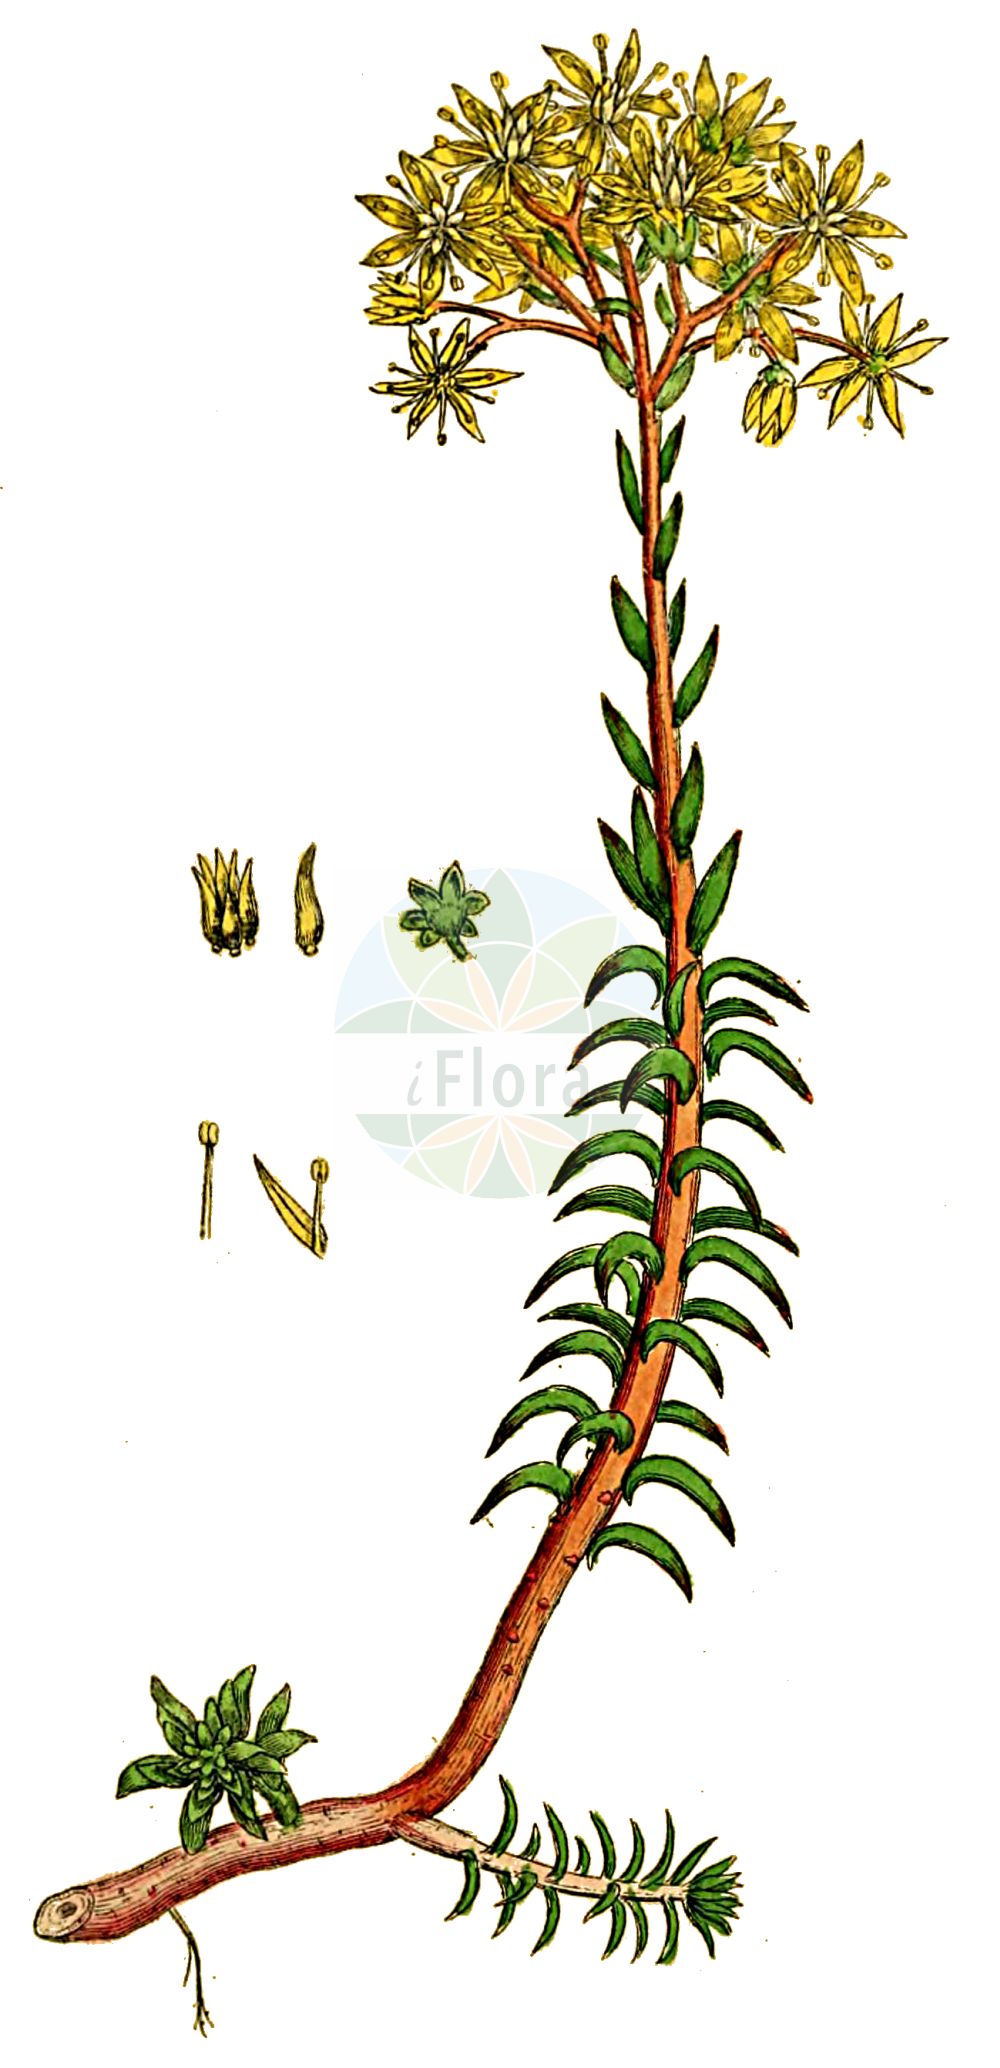 Historische Abbildung von Sedum rupestre (Felsen-Fetthenne - Reflexed Stonecrop). Das Bild zeigt Blatt, Bluete, Frucht und Same. ---- Historical Drawing of Sedum rupestre (Felsen-Fetthenne - Reflexed Stonecrop). The image is showing leaf, flower, fruit and seed.(Sedum rupestre,Felsen-Fetthenne,Reflexed Stonecrop,Petrosedum reflexum,Sedum albescens,Sedum reflexum,Sedum rupestre,Sedum rupestre subsp. albescens,Felsen-Fetthenne,Tripmadam,Reflexed Stonecrop,Jenny's Stonecrop,Rock Stonecrop,Sedum,Fetthenne,Stonecrop,Crassulaceae,Dickblattgewächse,Stonecrop family,Blatt,Bluete,Frucht,Same,leaf,flower,fruit,seed,Sowerby (1790-1813))